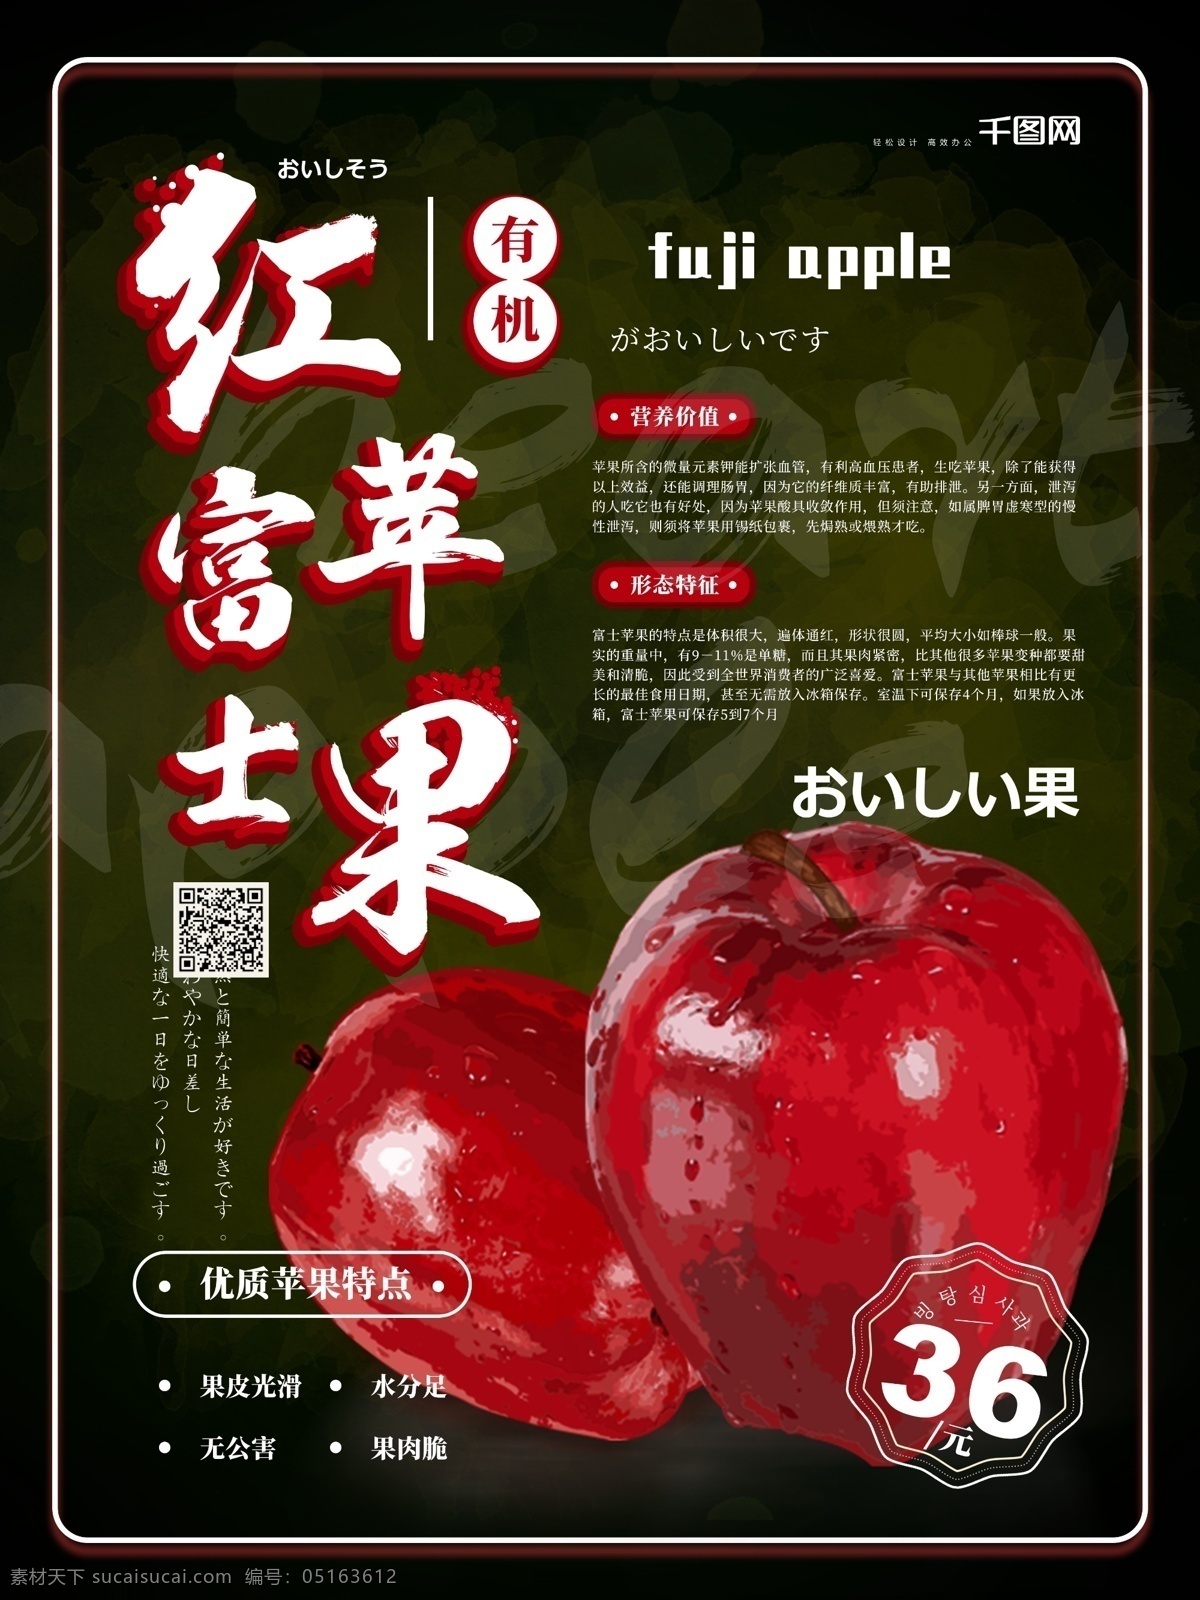 简约 红富士 苹果 水果 促销 海报 苹果海报 水果海报 红富士苹果 苹果水果海报